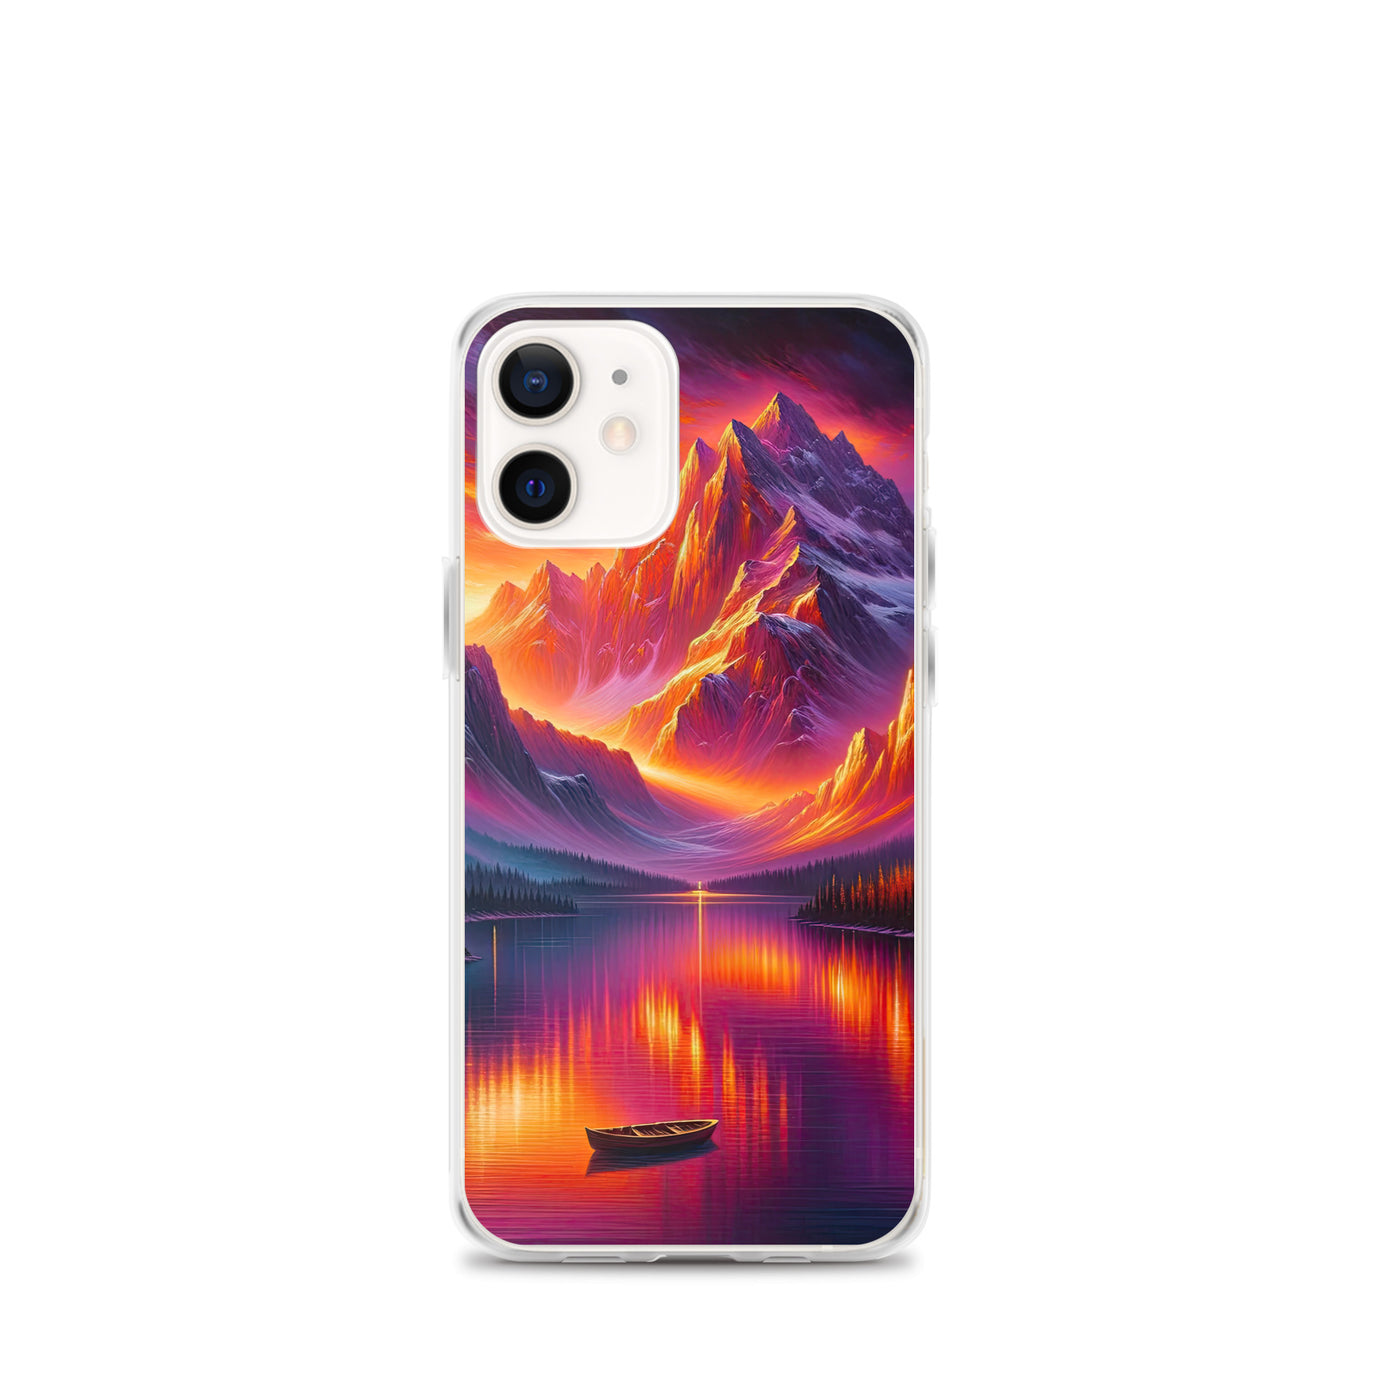 Ölgemälde eines Bootes auf einem Bergsee bei Sonnenuntergang, lebendige Orange-Lila Töne - iPhone Schutzhülle (durchsichtig) berge xxx yyy zzz iPhone 12 mini